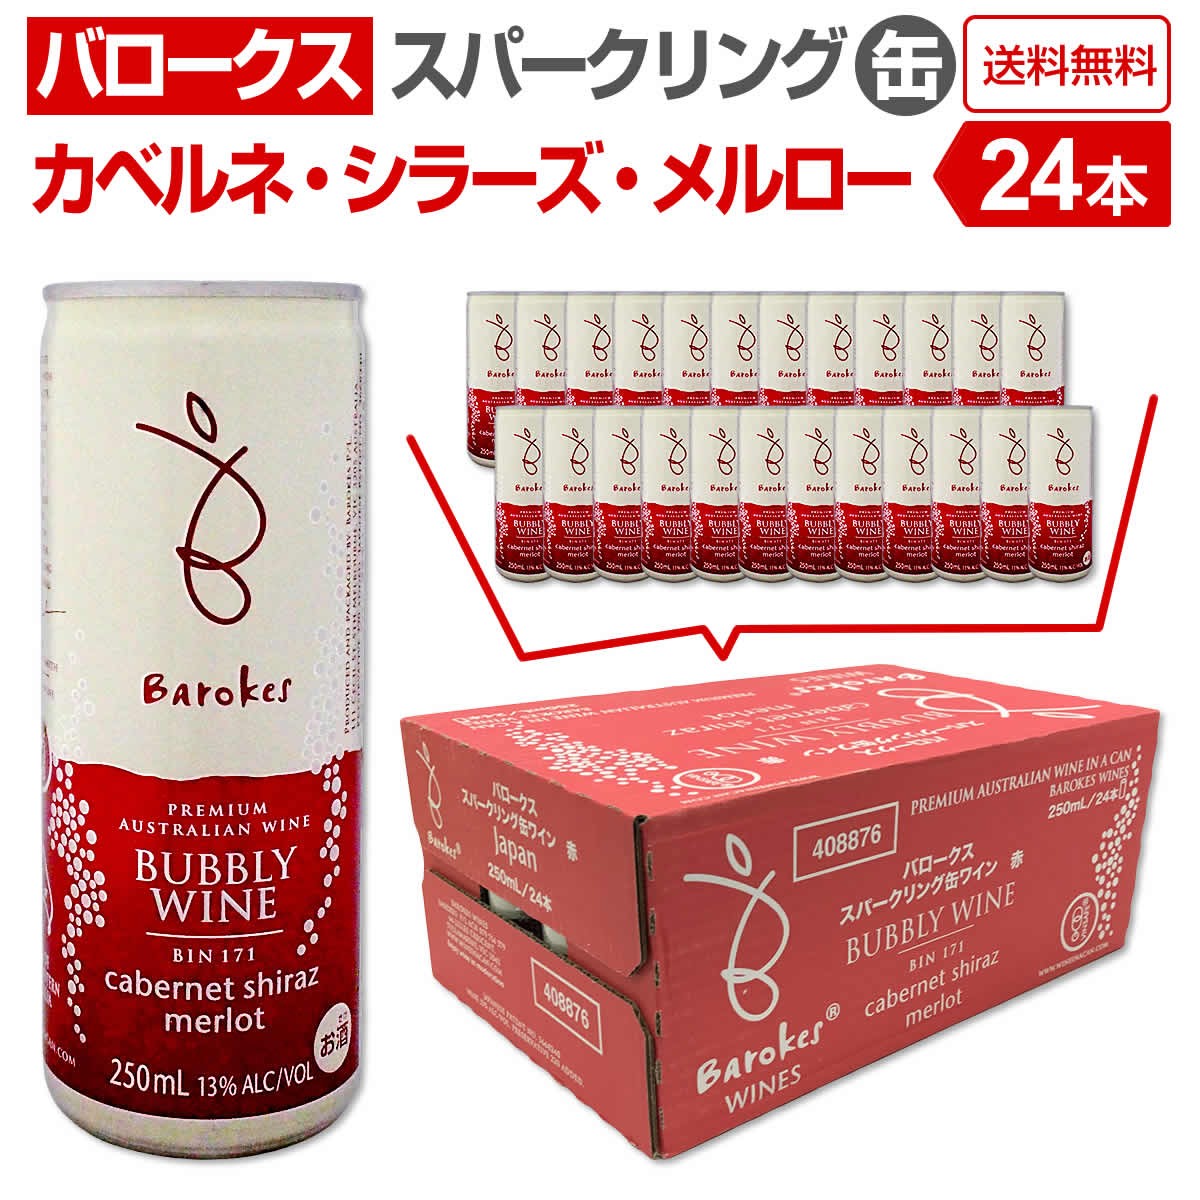 赤ワイン オーストラリア wine 250ml 缶 24本 バロークス・スパークリング sparkling ・カベルネ・シラーズ・メルロー ケース販売  :ns0133:東京ワインガーデン - 通販 - 